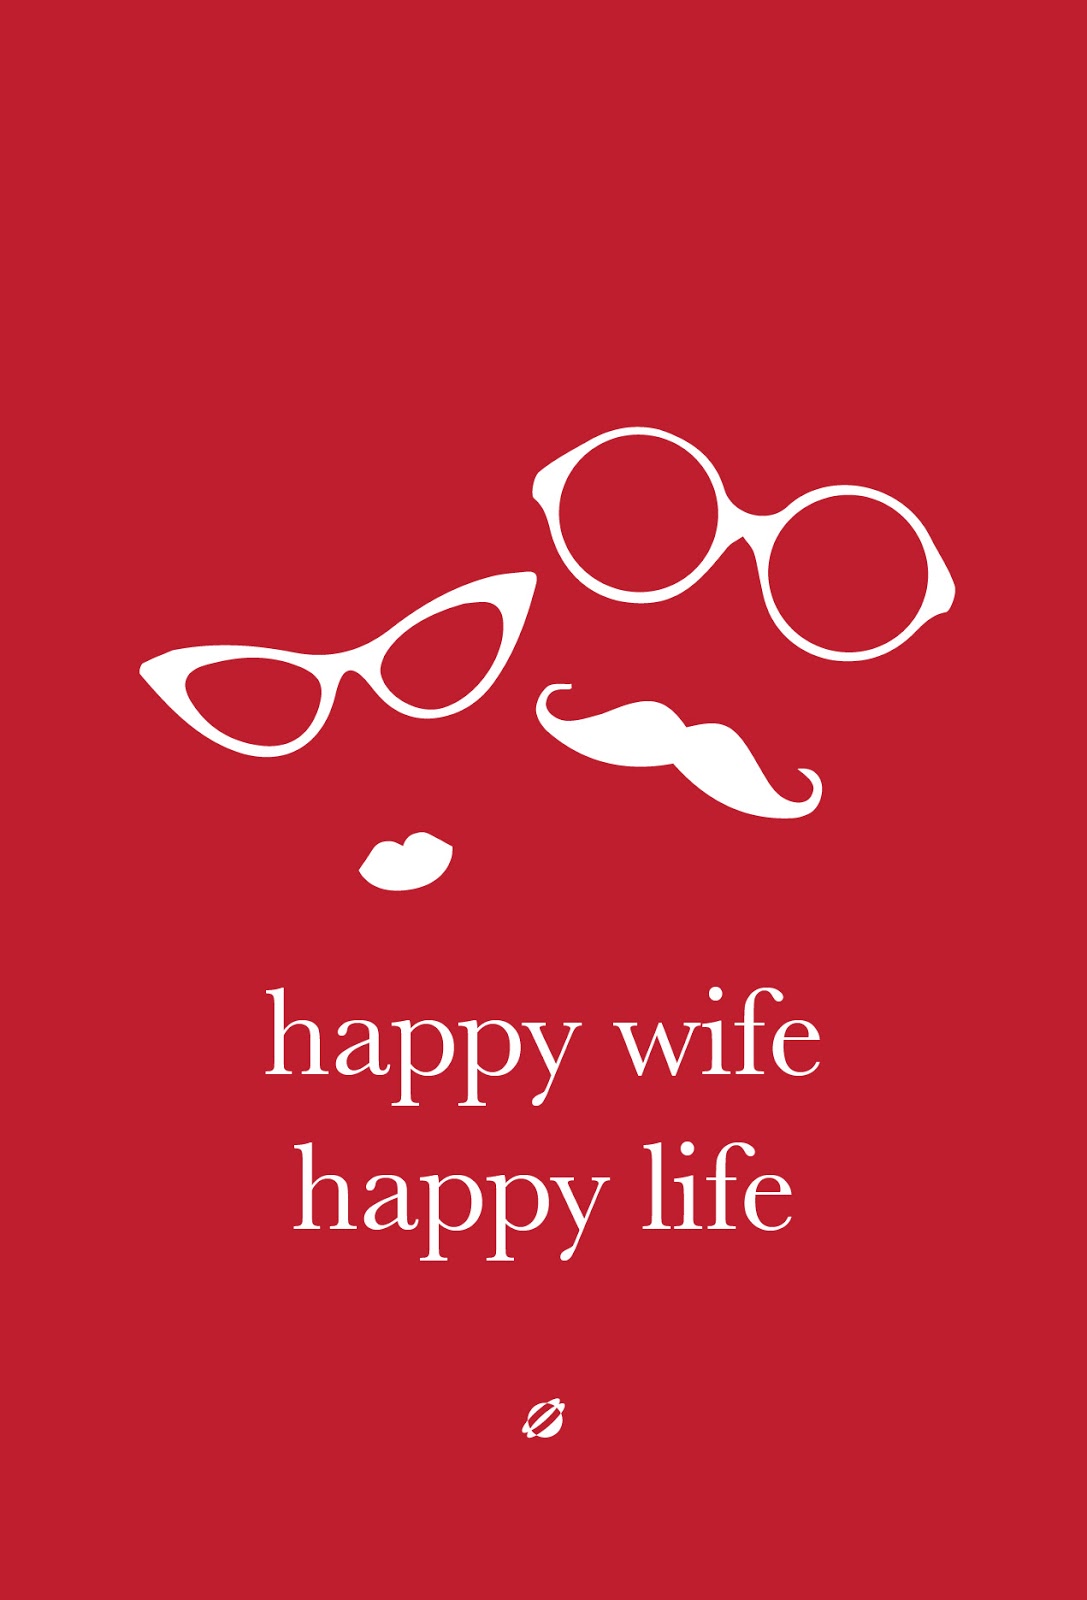 http://1.bp.blogspot.com/-XAdy5UGXtYU/UlXzubVDHBI/AAAAAAAACts/kjpukaZzlnw/s1600/Happy+Wife+Happy+Life-01.jpg